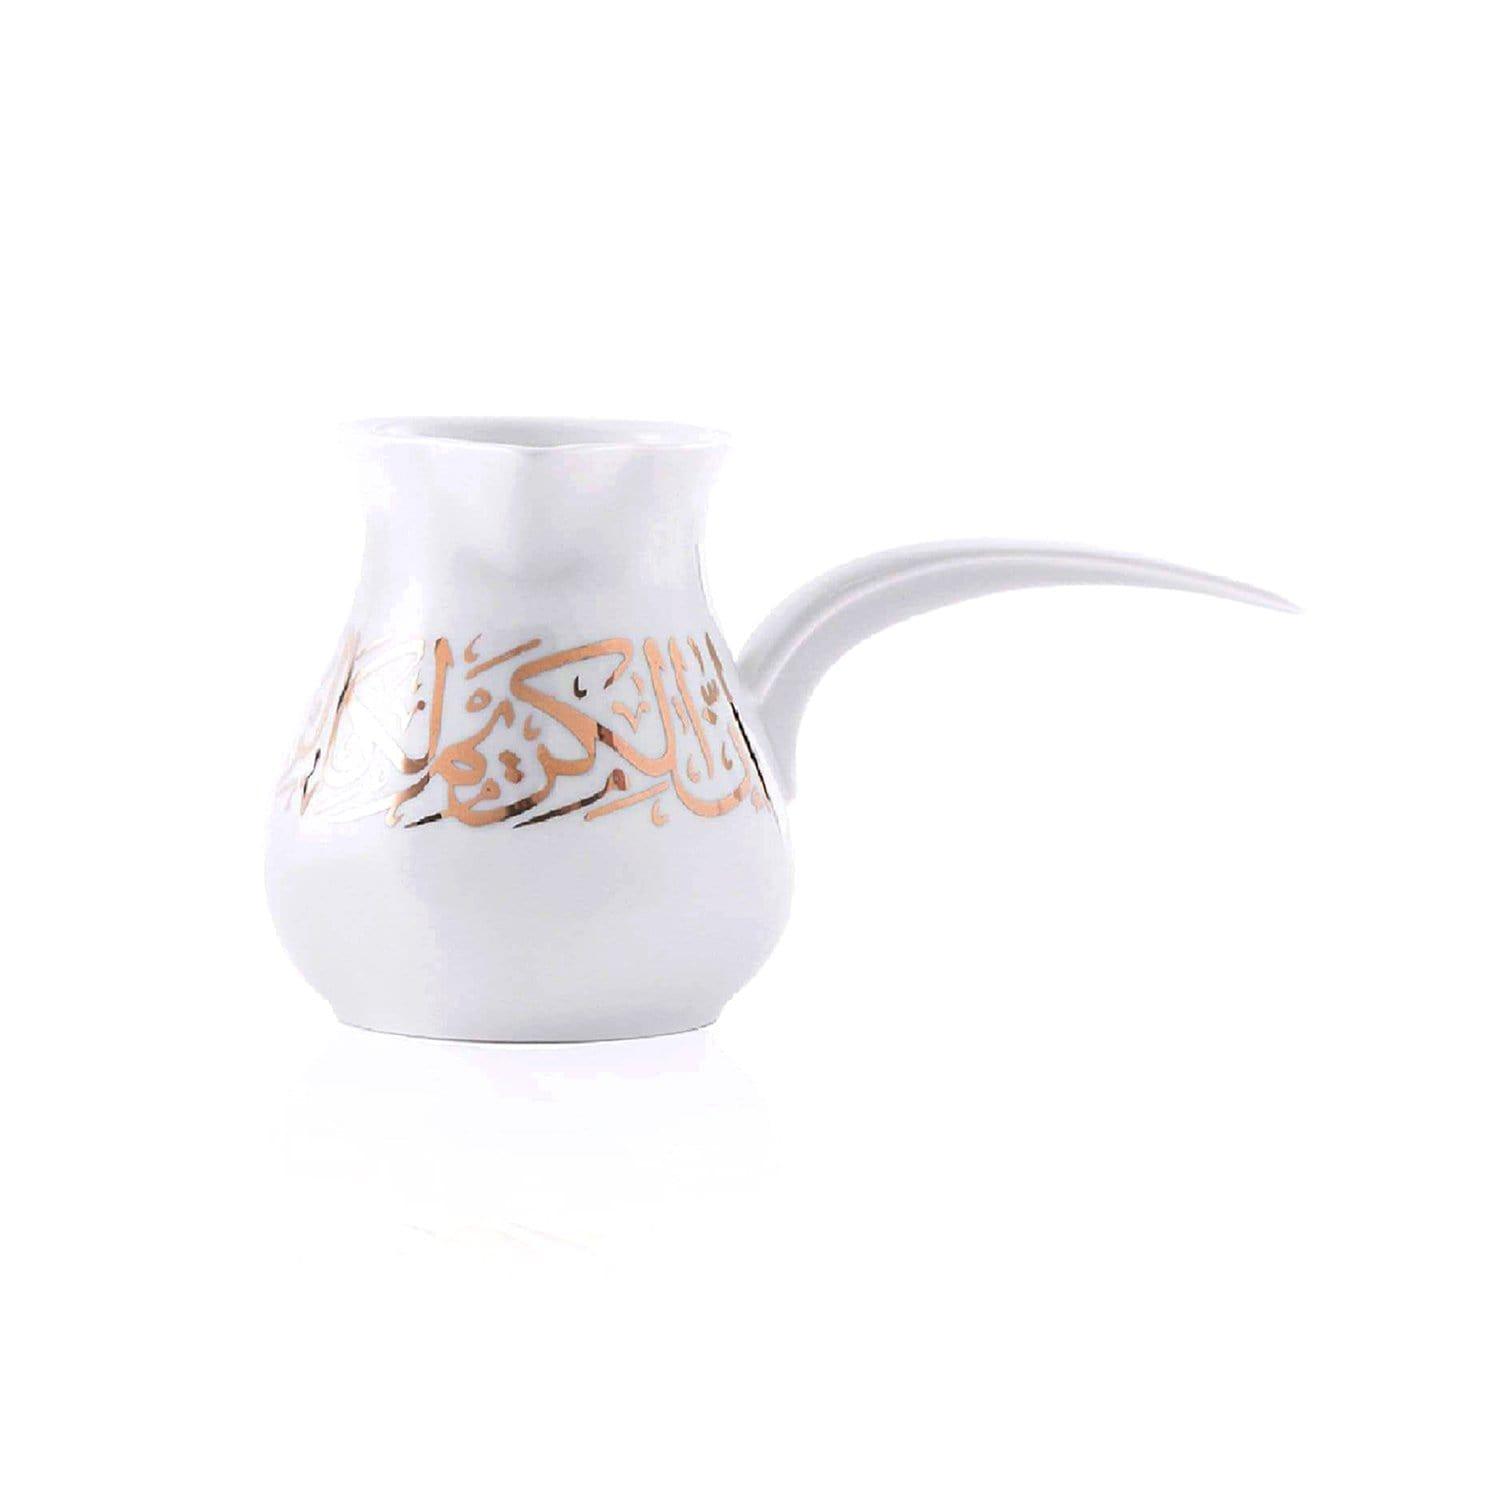 دلة قهوة صغيرة بورسلين 280 ملي لتر أبيض وذهبي دملاج  Dimlaj Kareem Turkish Small Coffee Pot